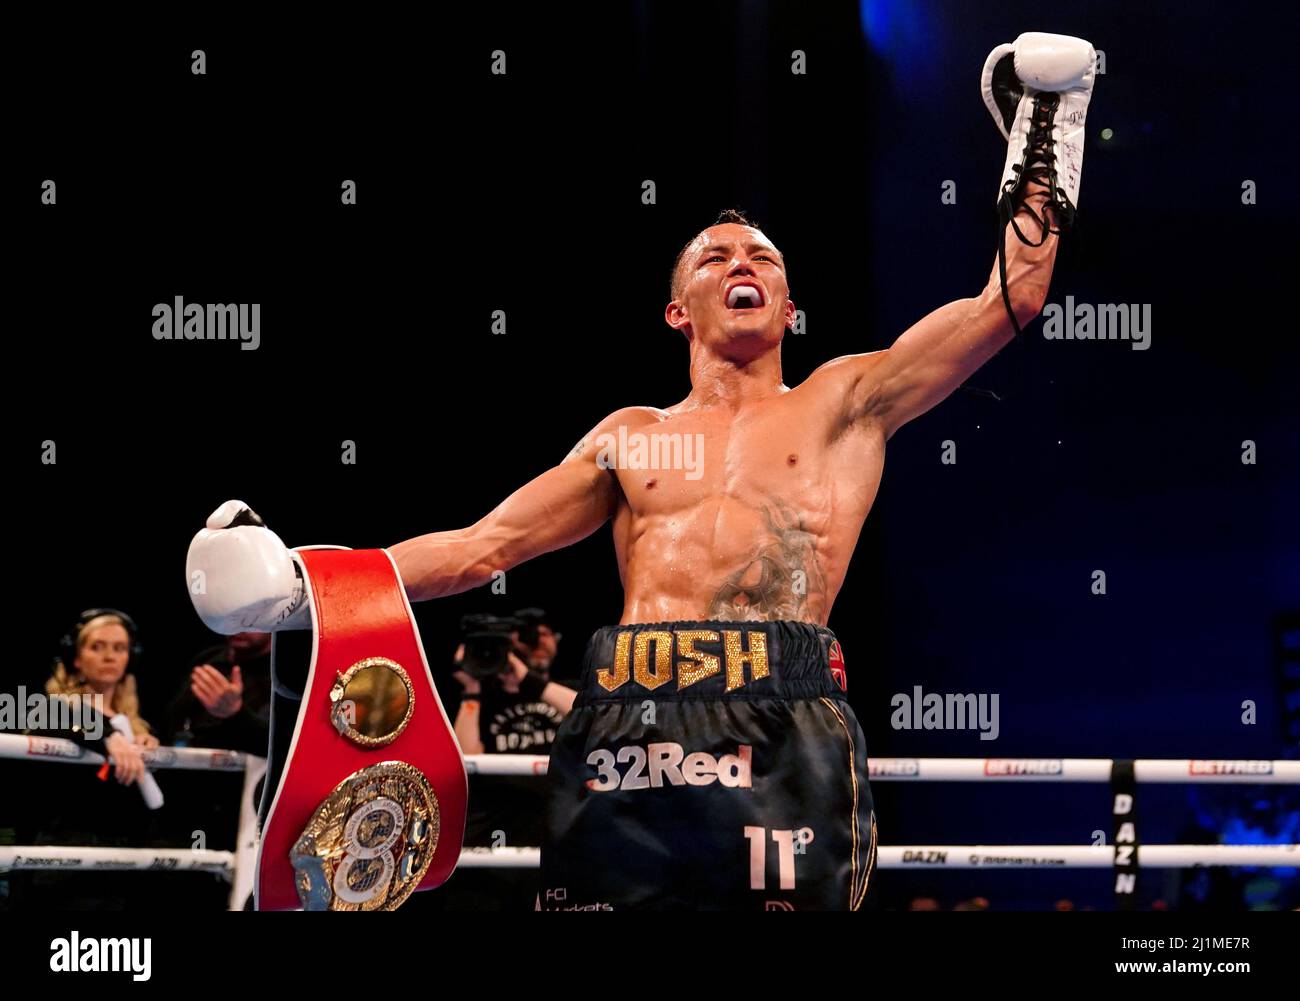 Josh Warrington feiert seinen Sieg im IBF World Featherweight Title Kampf gegen Kiko Martinez in der ersten Direct Arena in Leeds. Bilddatum: Samstag, 26. März 2022. Stockfoto